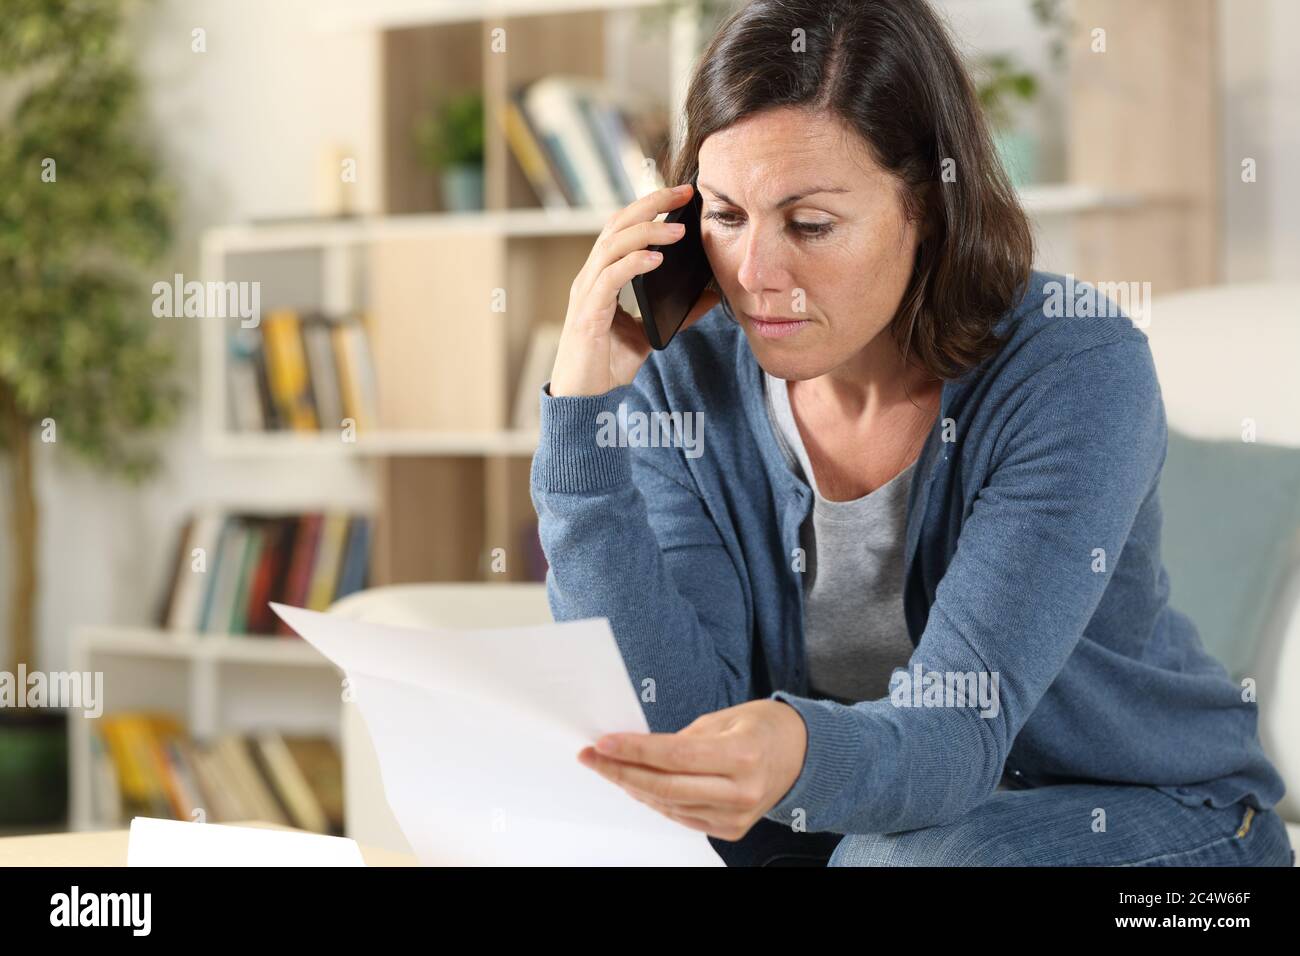 Femme adulte sérieuse appelant sur un smartphone vérifiant la lettre assise sur le canapé à la maison Banque D'Images